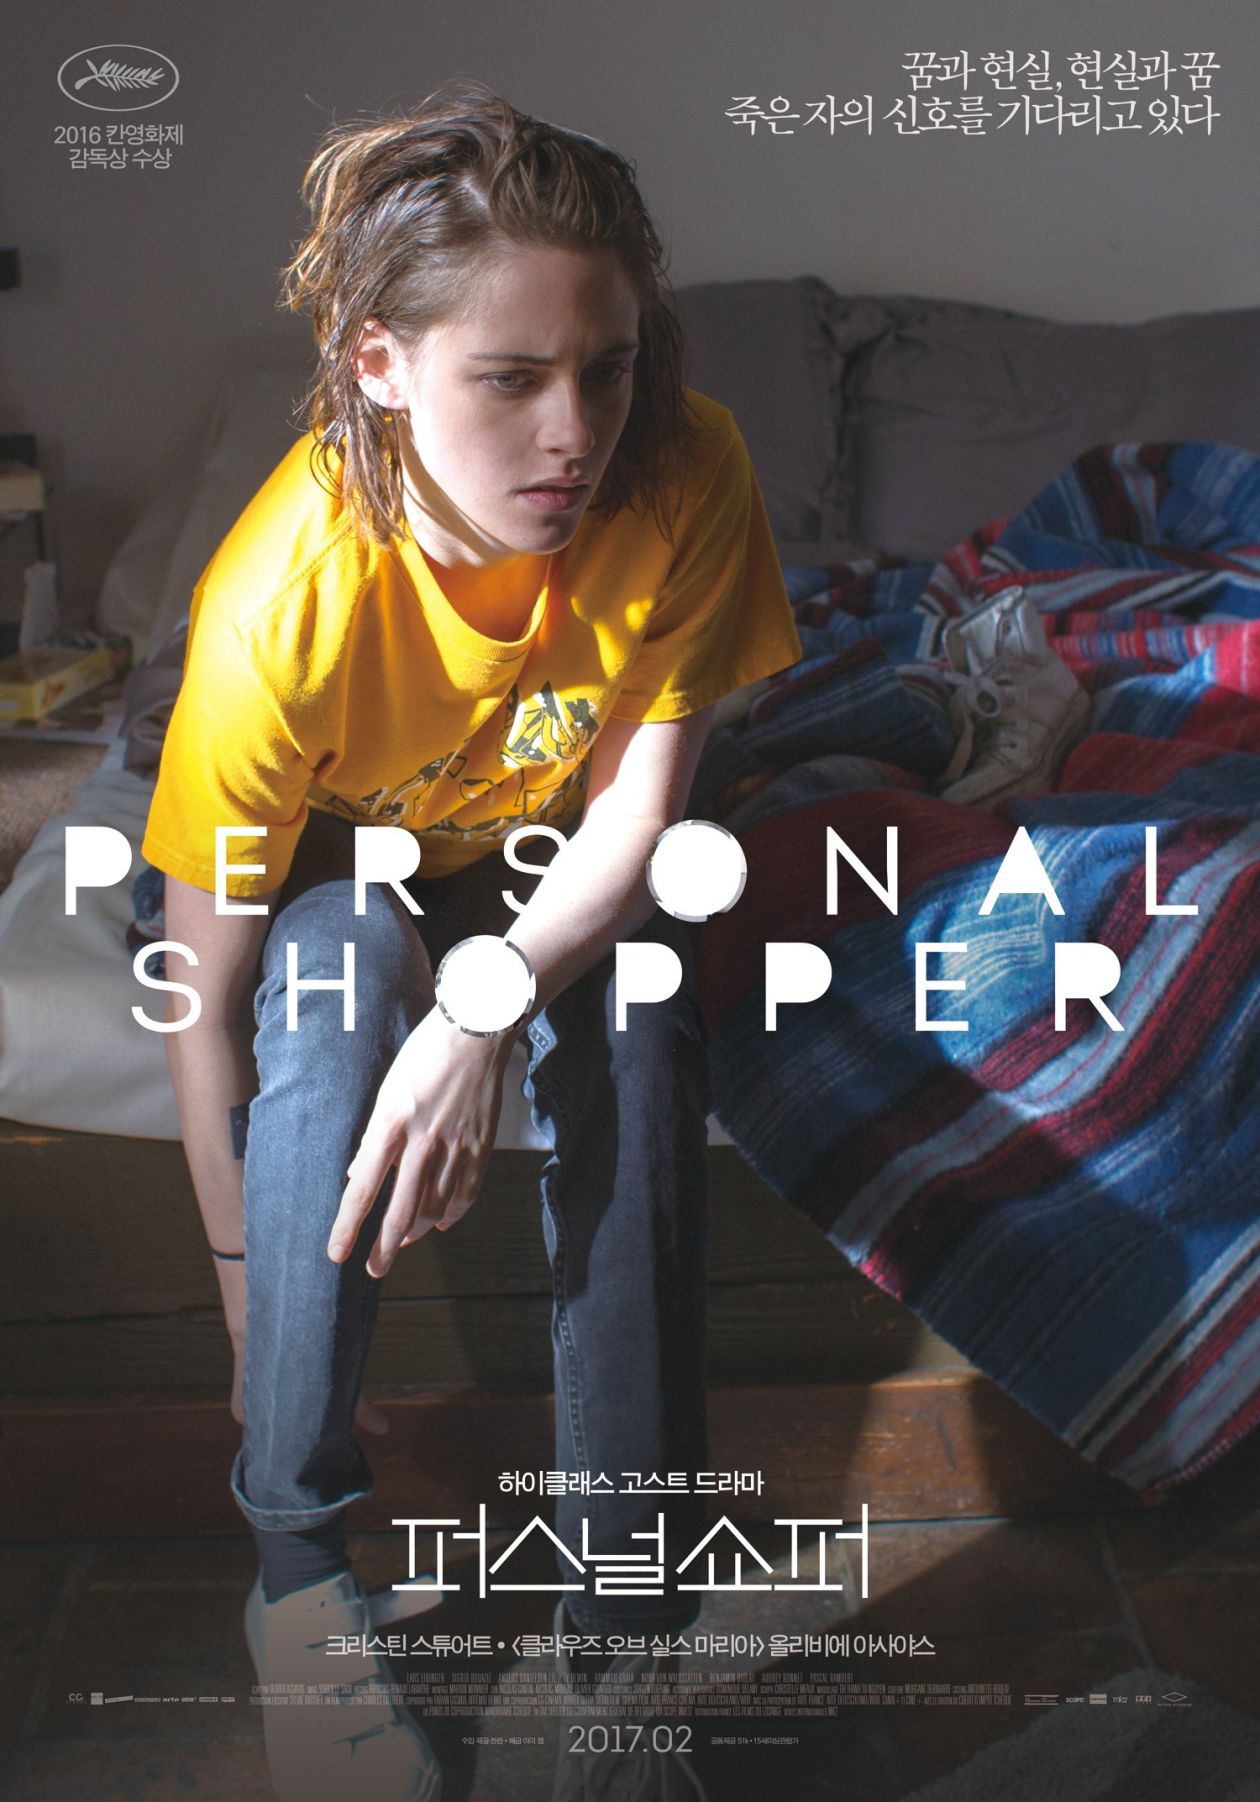 Movie Poster / Affiche du film / Kristen Stewart: Maureen | Personal Shopper | Olivier Assayas, 2016